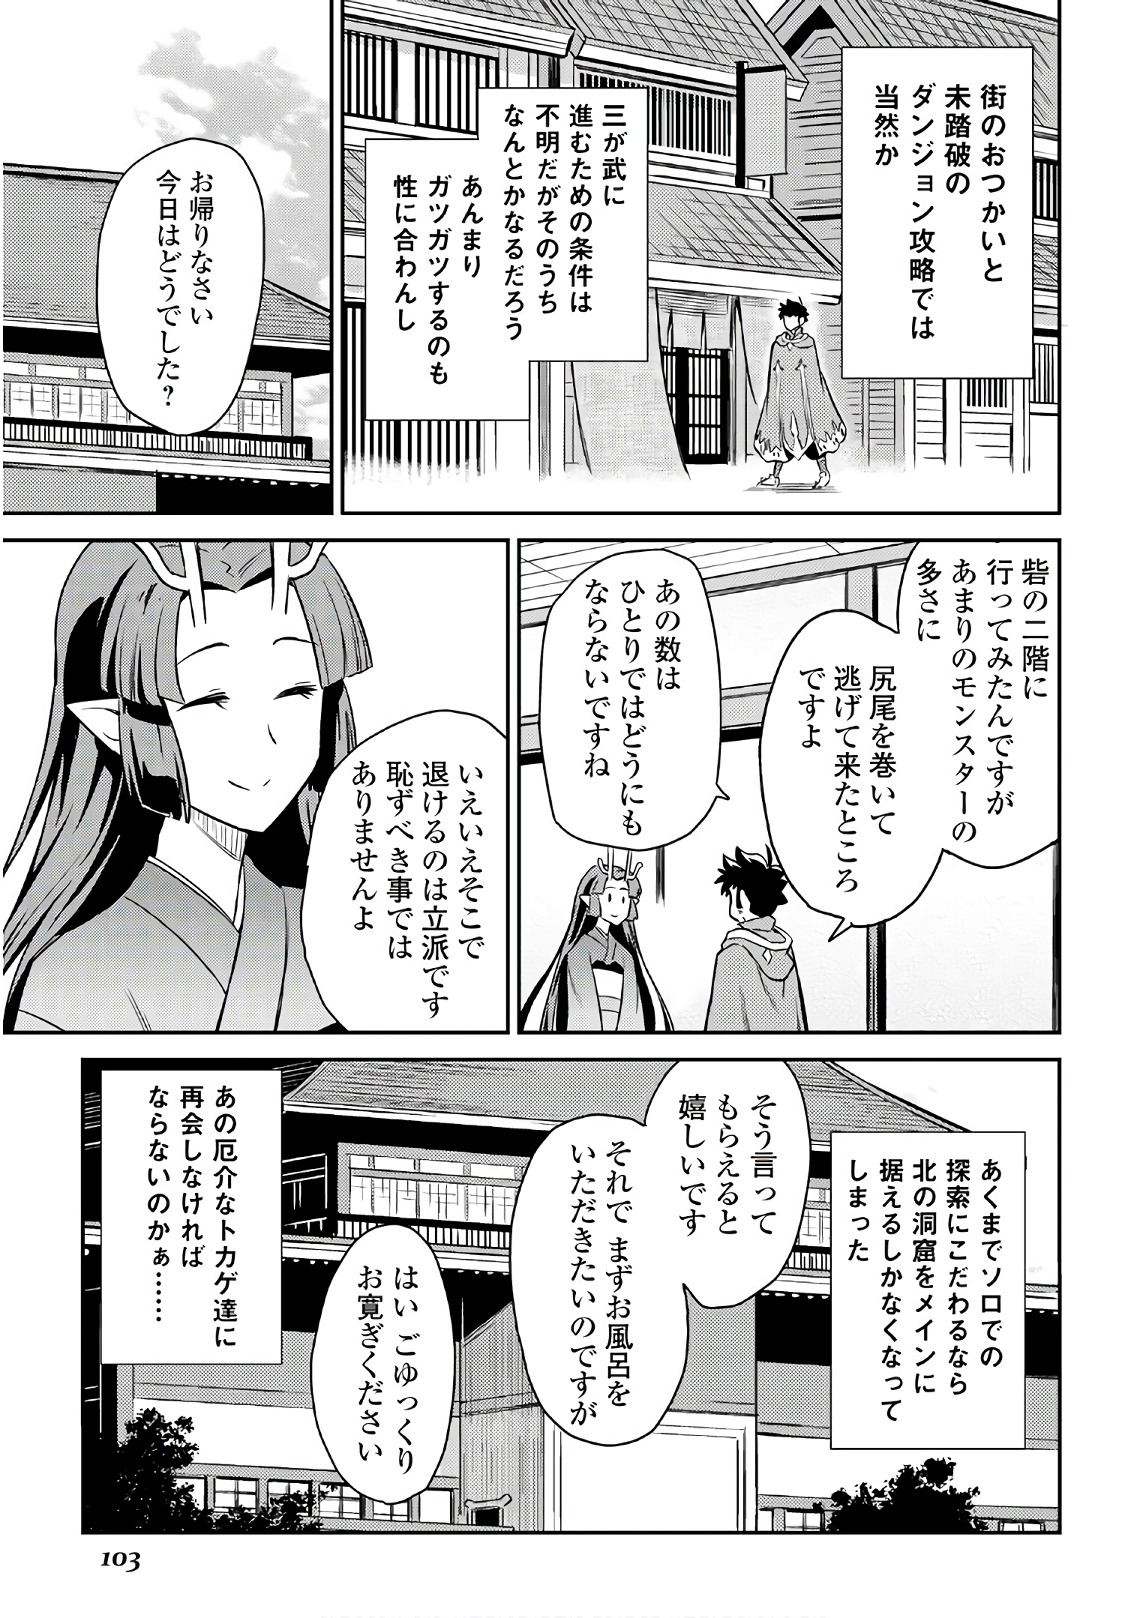 Toaru Ossan no VRMMO Katsudouki - Chapter 40 - Page 25